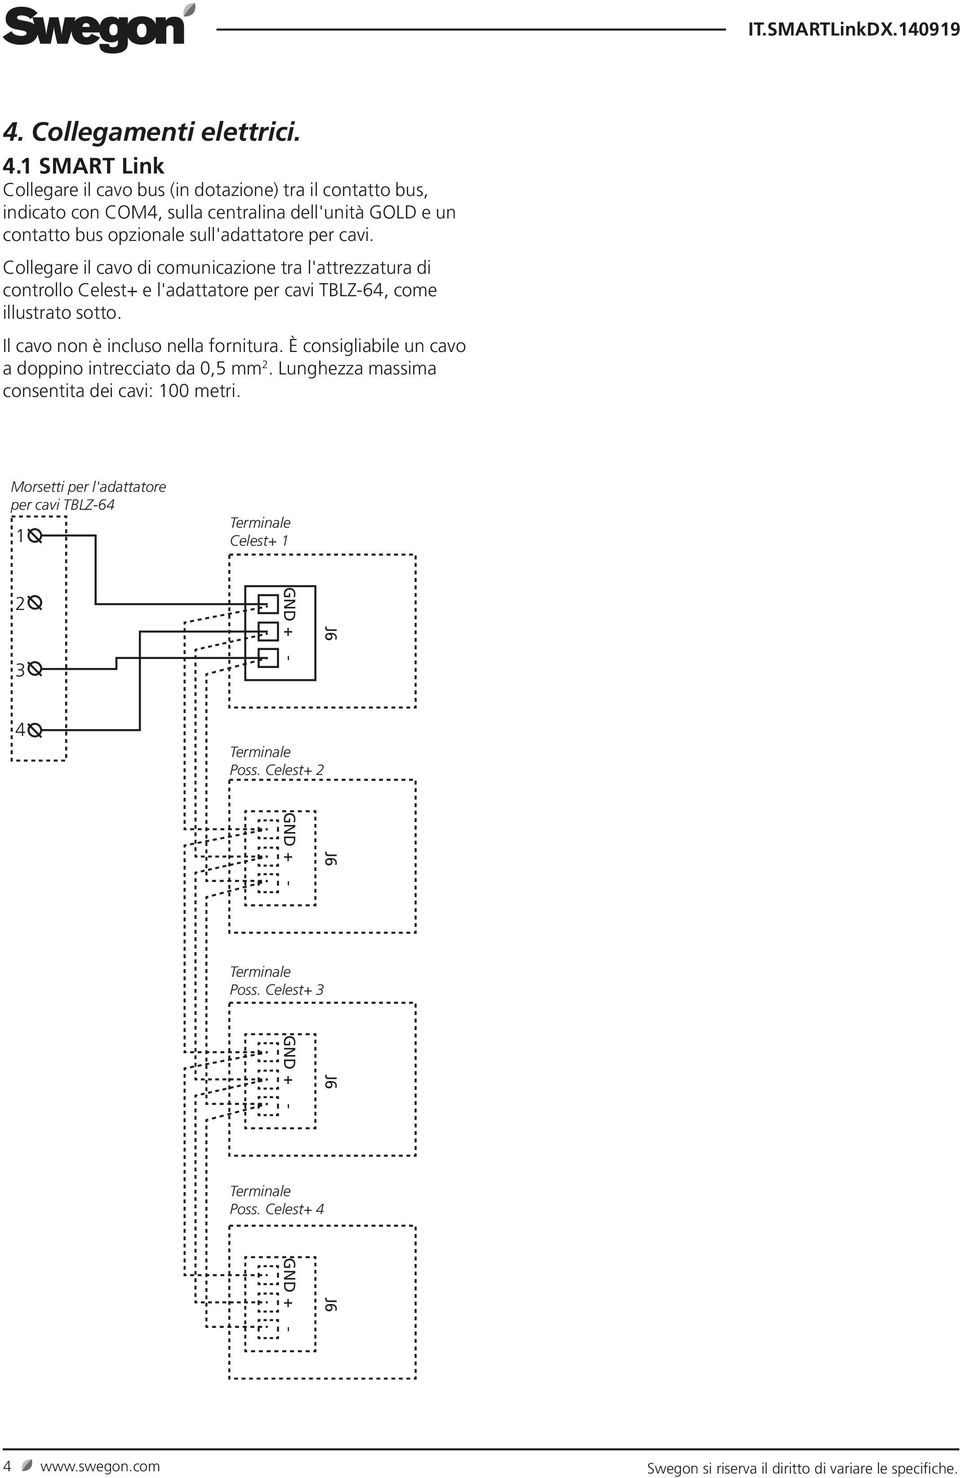 sull'adattatore per cavi. Collegare il cavo di comunicazione tra l'attrezzatura di controllo e l'adattatore per cavi TBLZ-64, come illustrato sotto.